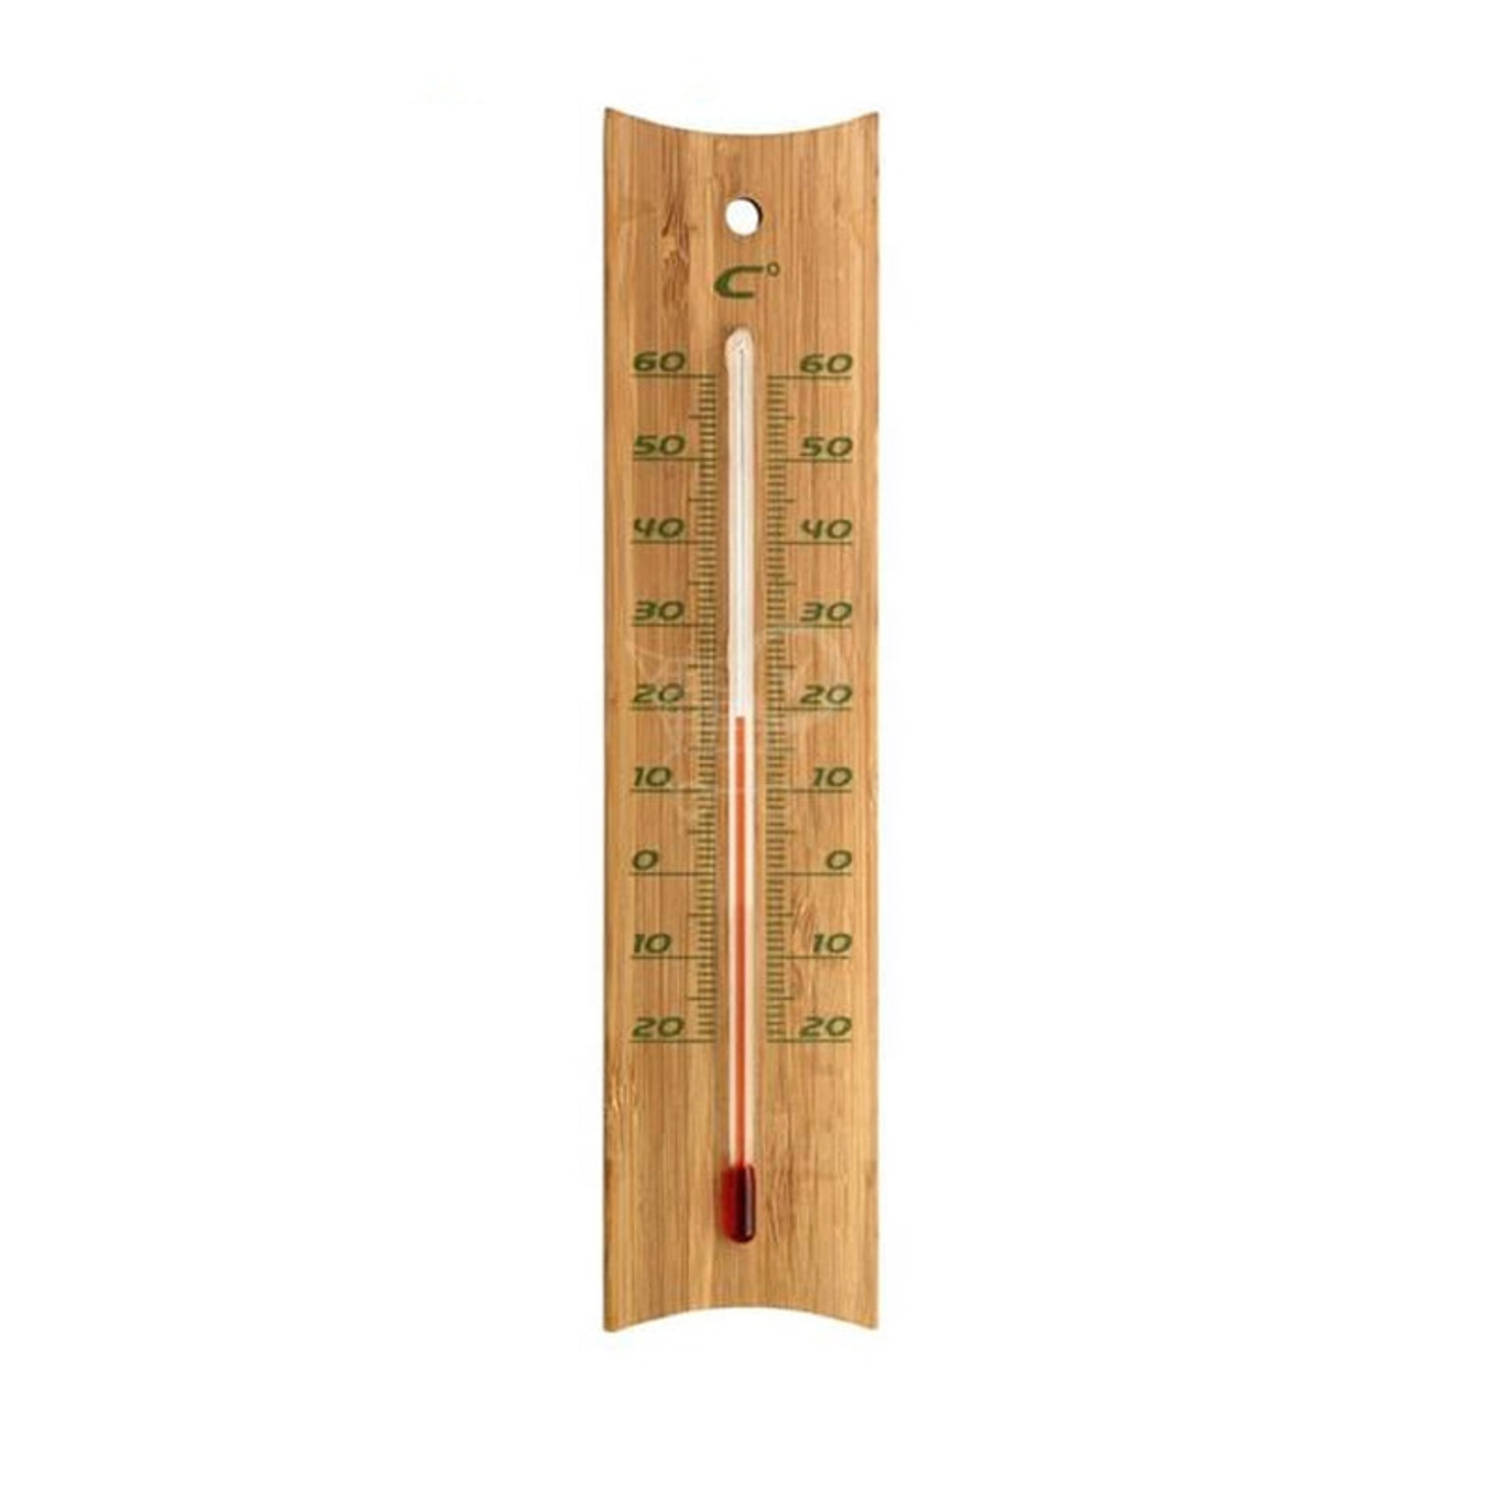 Orthodox Voorlopige naam Naar behoren Binnen/buiten thermometer bamboe 4,5 x 20 cm - Buitenthermometers | Blokker